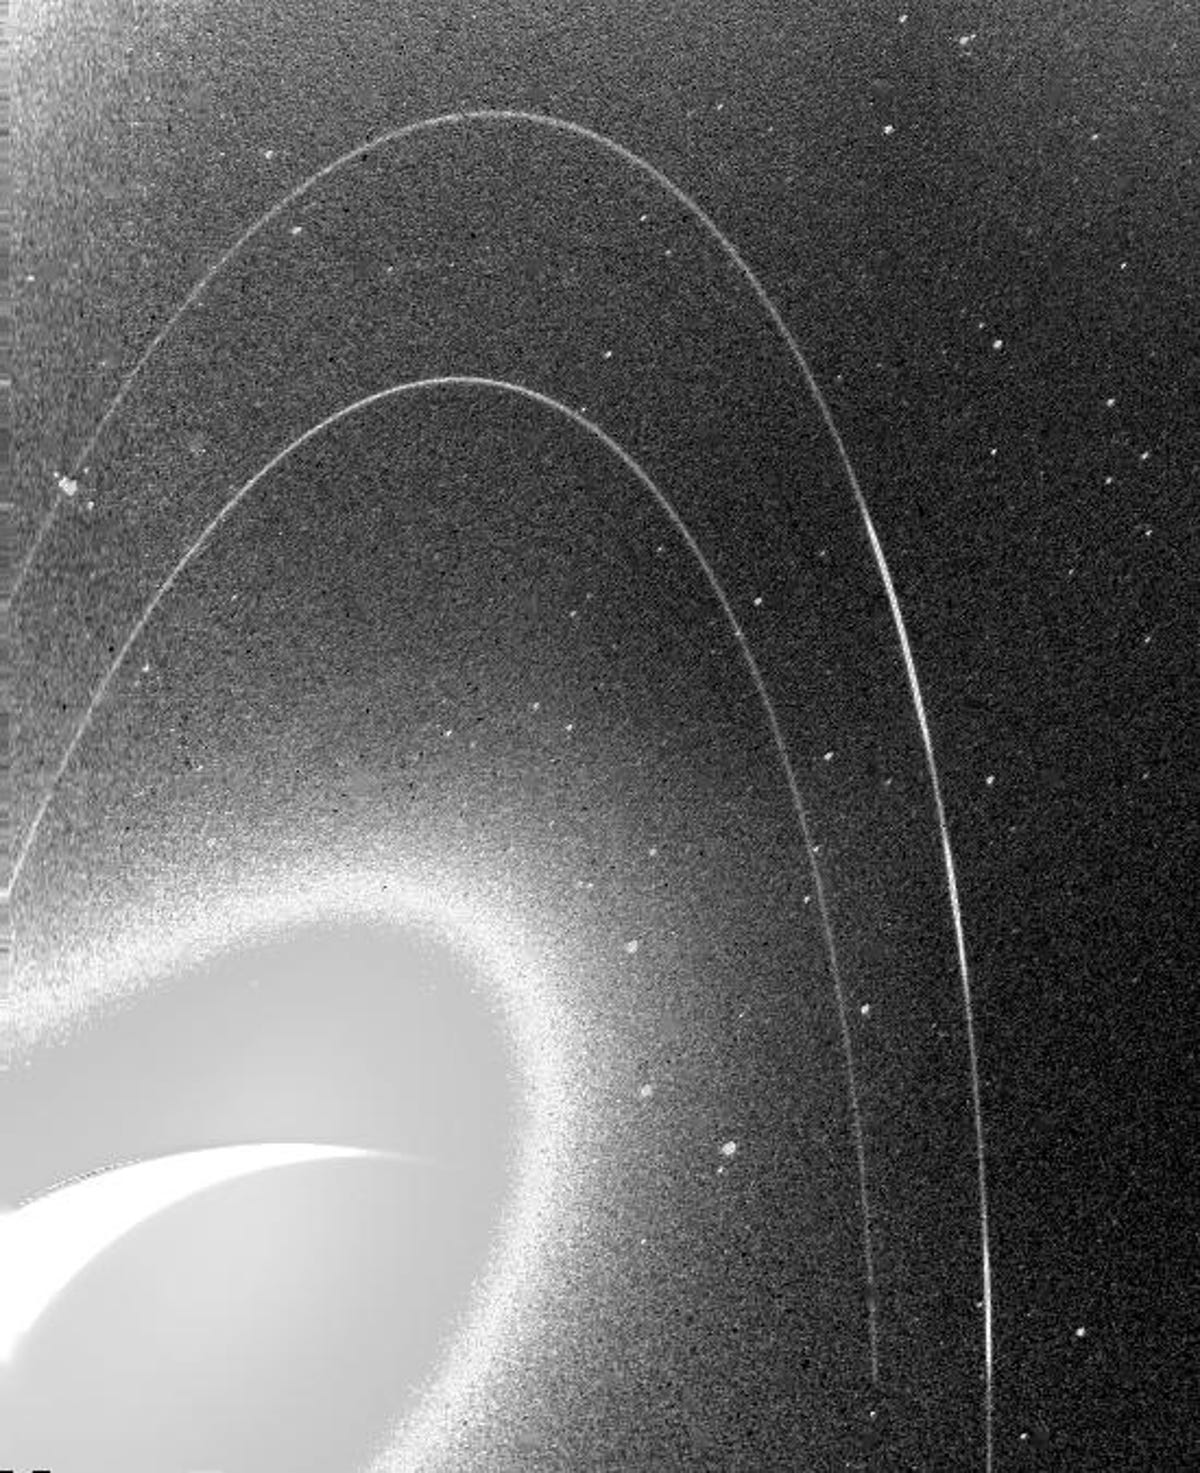 Grenli, siyah beyaz bir görüntü, Neptün'ün narin halkalarını gösteriyor.